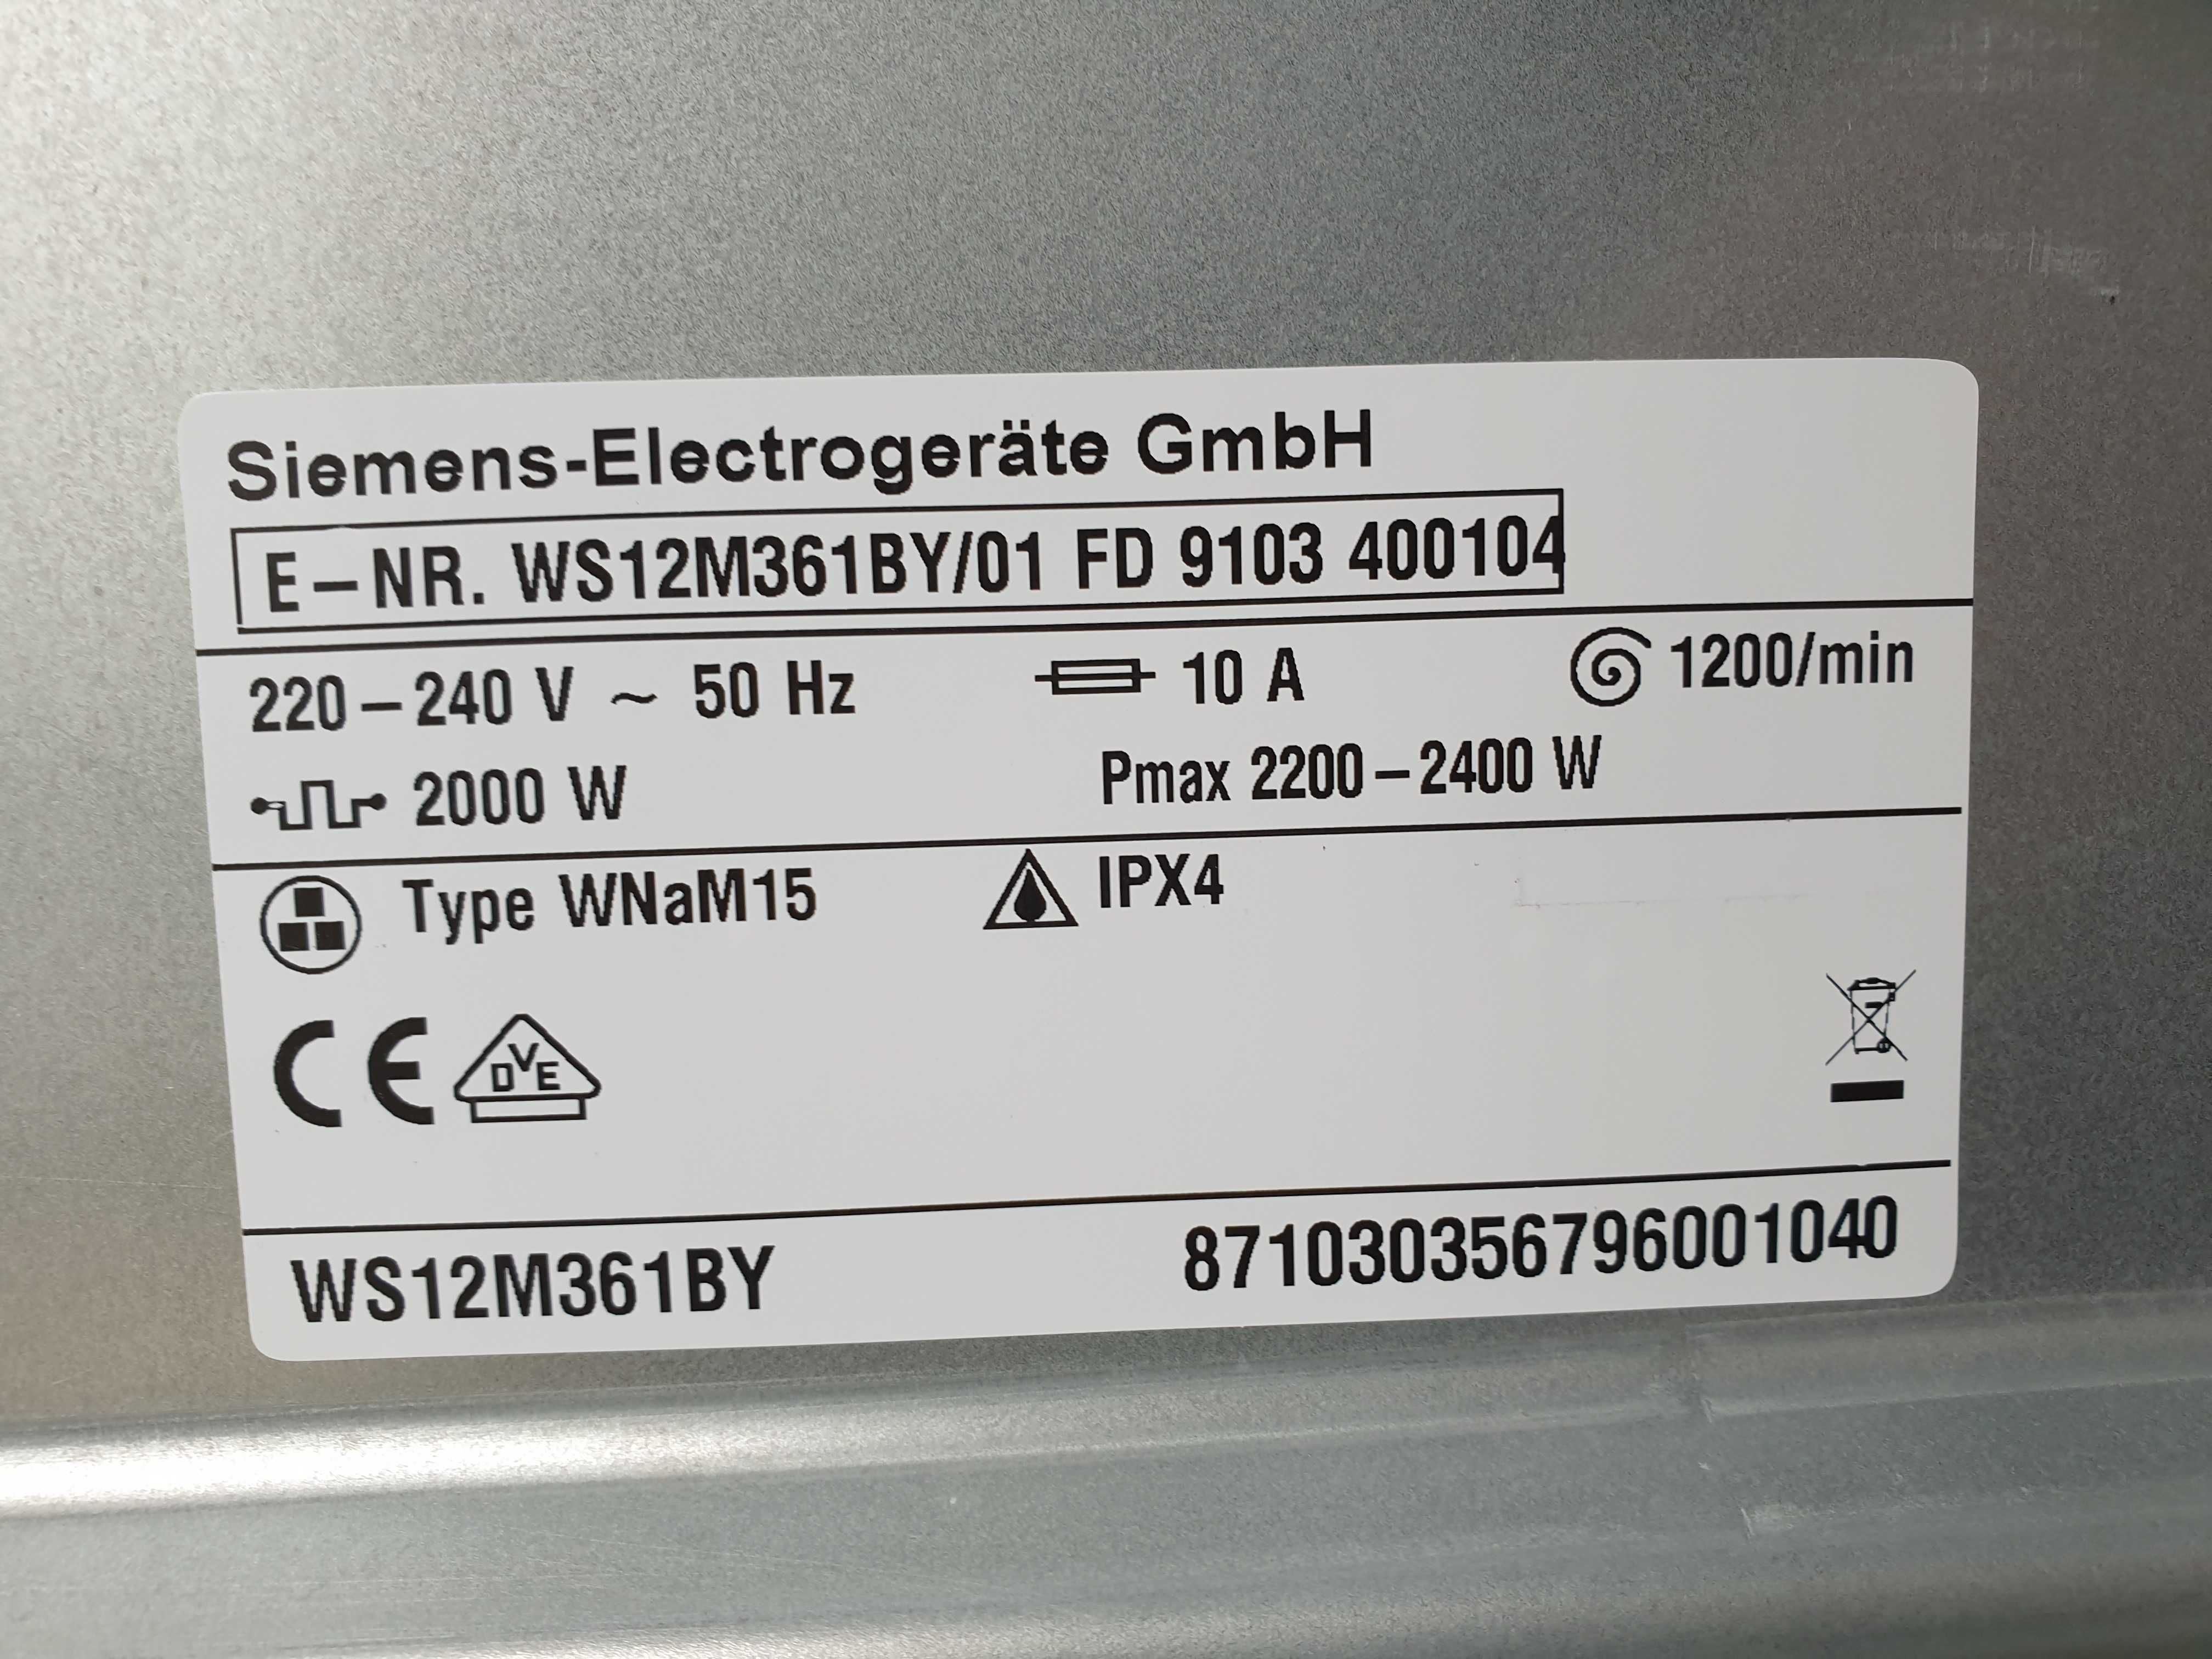 Узкая пральна/стиральная/ машина Siemens IQ 500 / Made in Germany